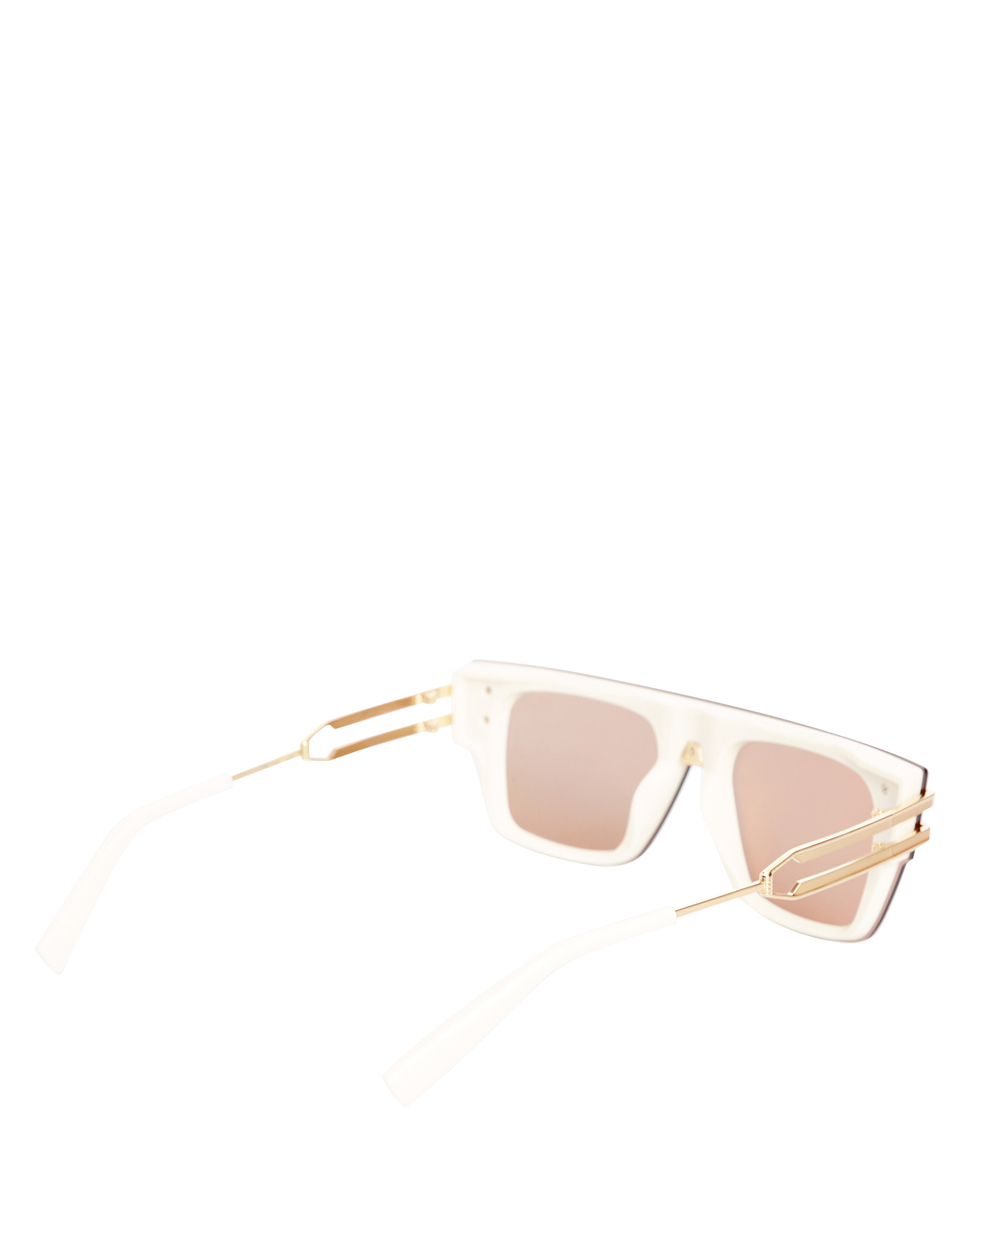 Солнцезащитные очки Balmain BPS-124B-148, золотой цвет • Купить в интернет-магазине Kameron